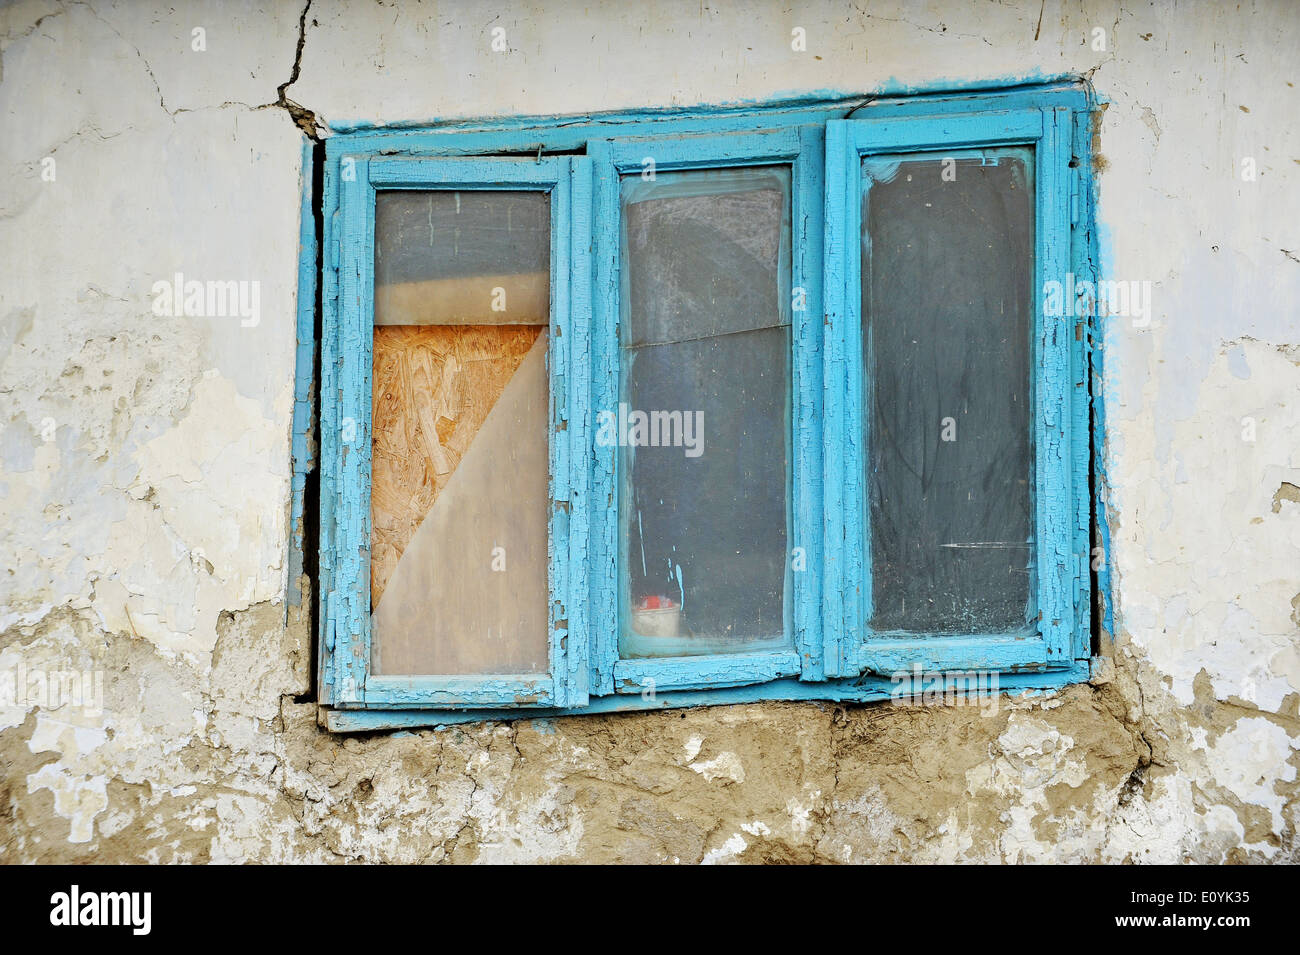 Danneggiato tradizionale vecchio adobe house dettaglio con finestra blu Foto Stock